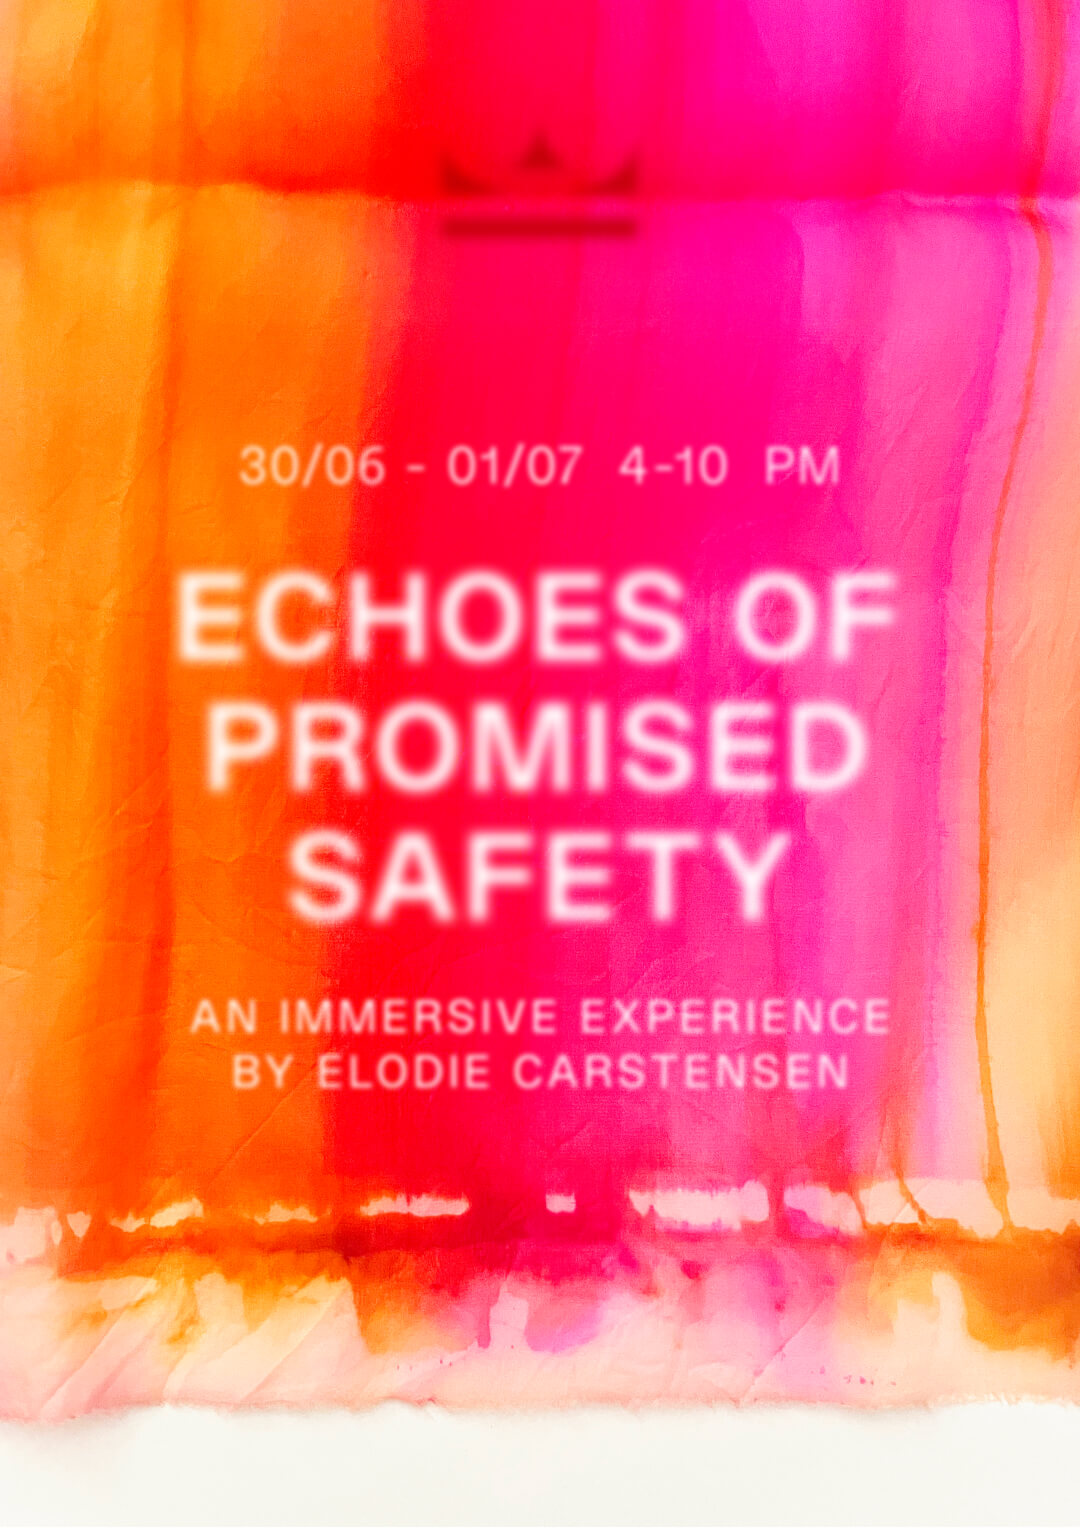 Veranstaltungsplakat in rot/gelb-Tönen für Echoes Of Promised Safery